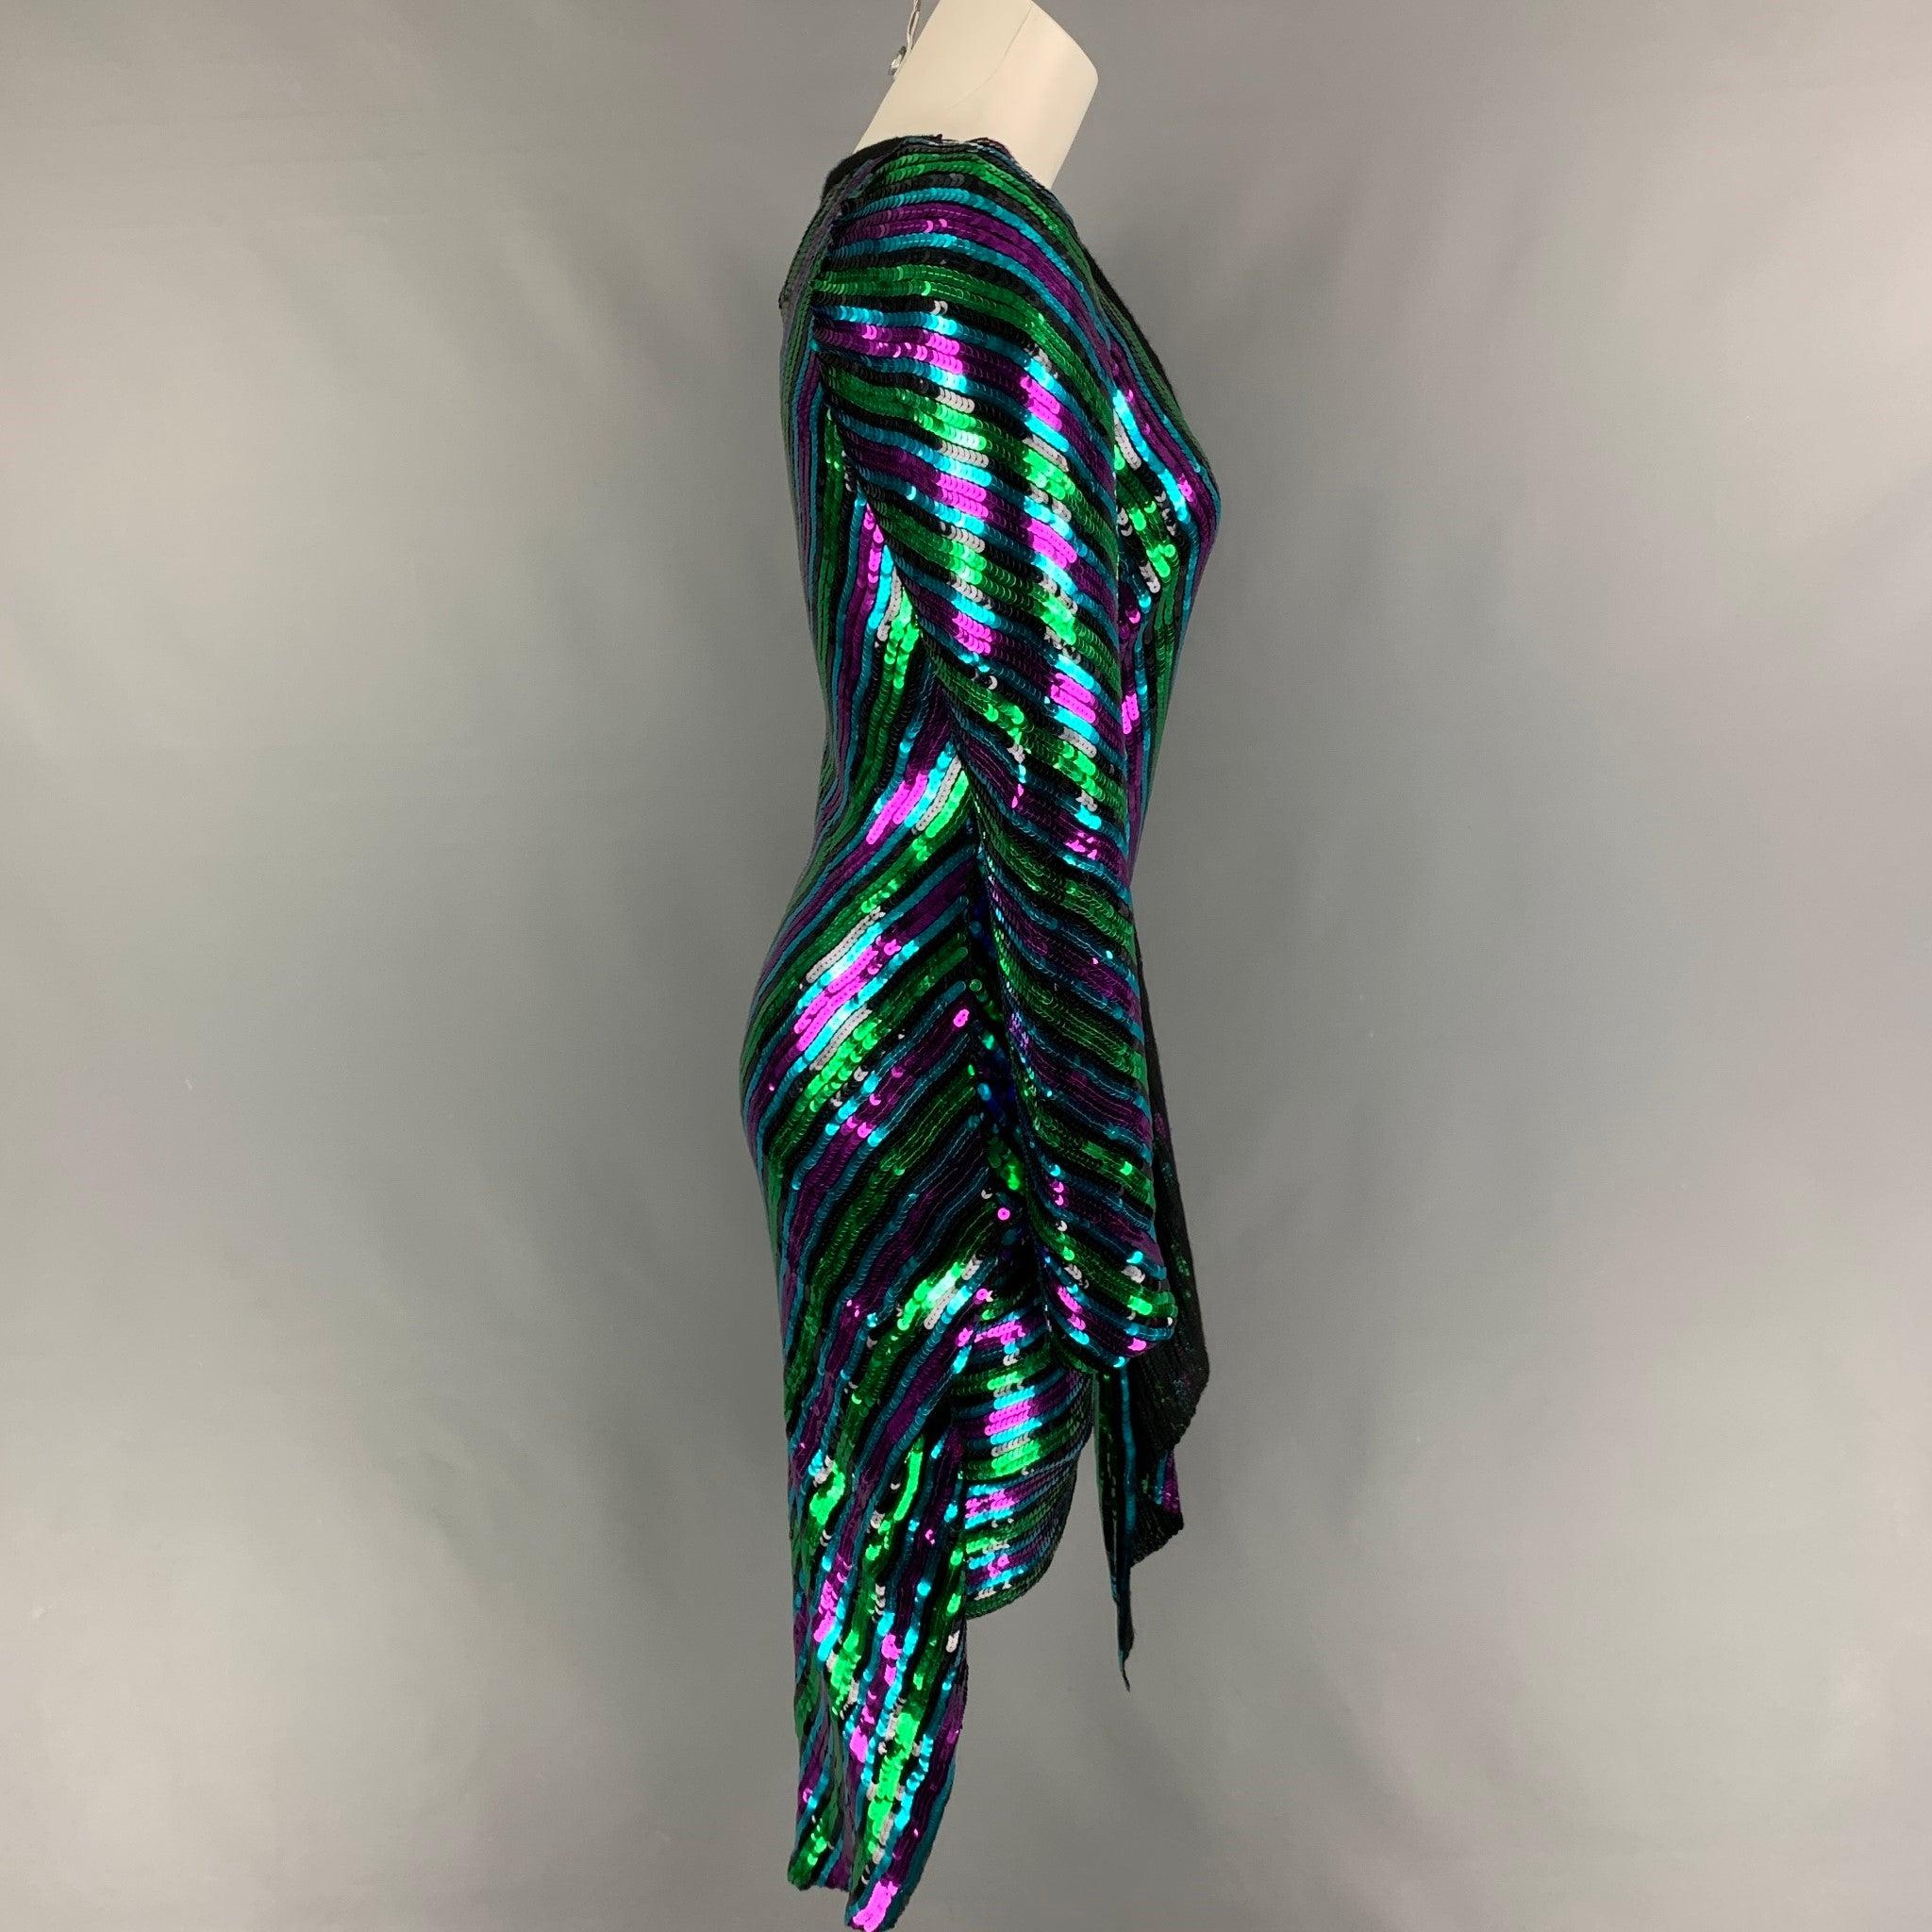 La robe 'Disco' Pre-Fall 2019 de MARC JACOB est présentée dans une matière à paillettes à rayures multicolores et présente un style asymétrique, un enfilage, des manches longues et un décolleté profond.
Très bien
Etat d'occasion. 

Marqué :   2